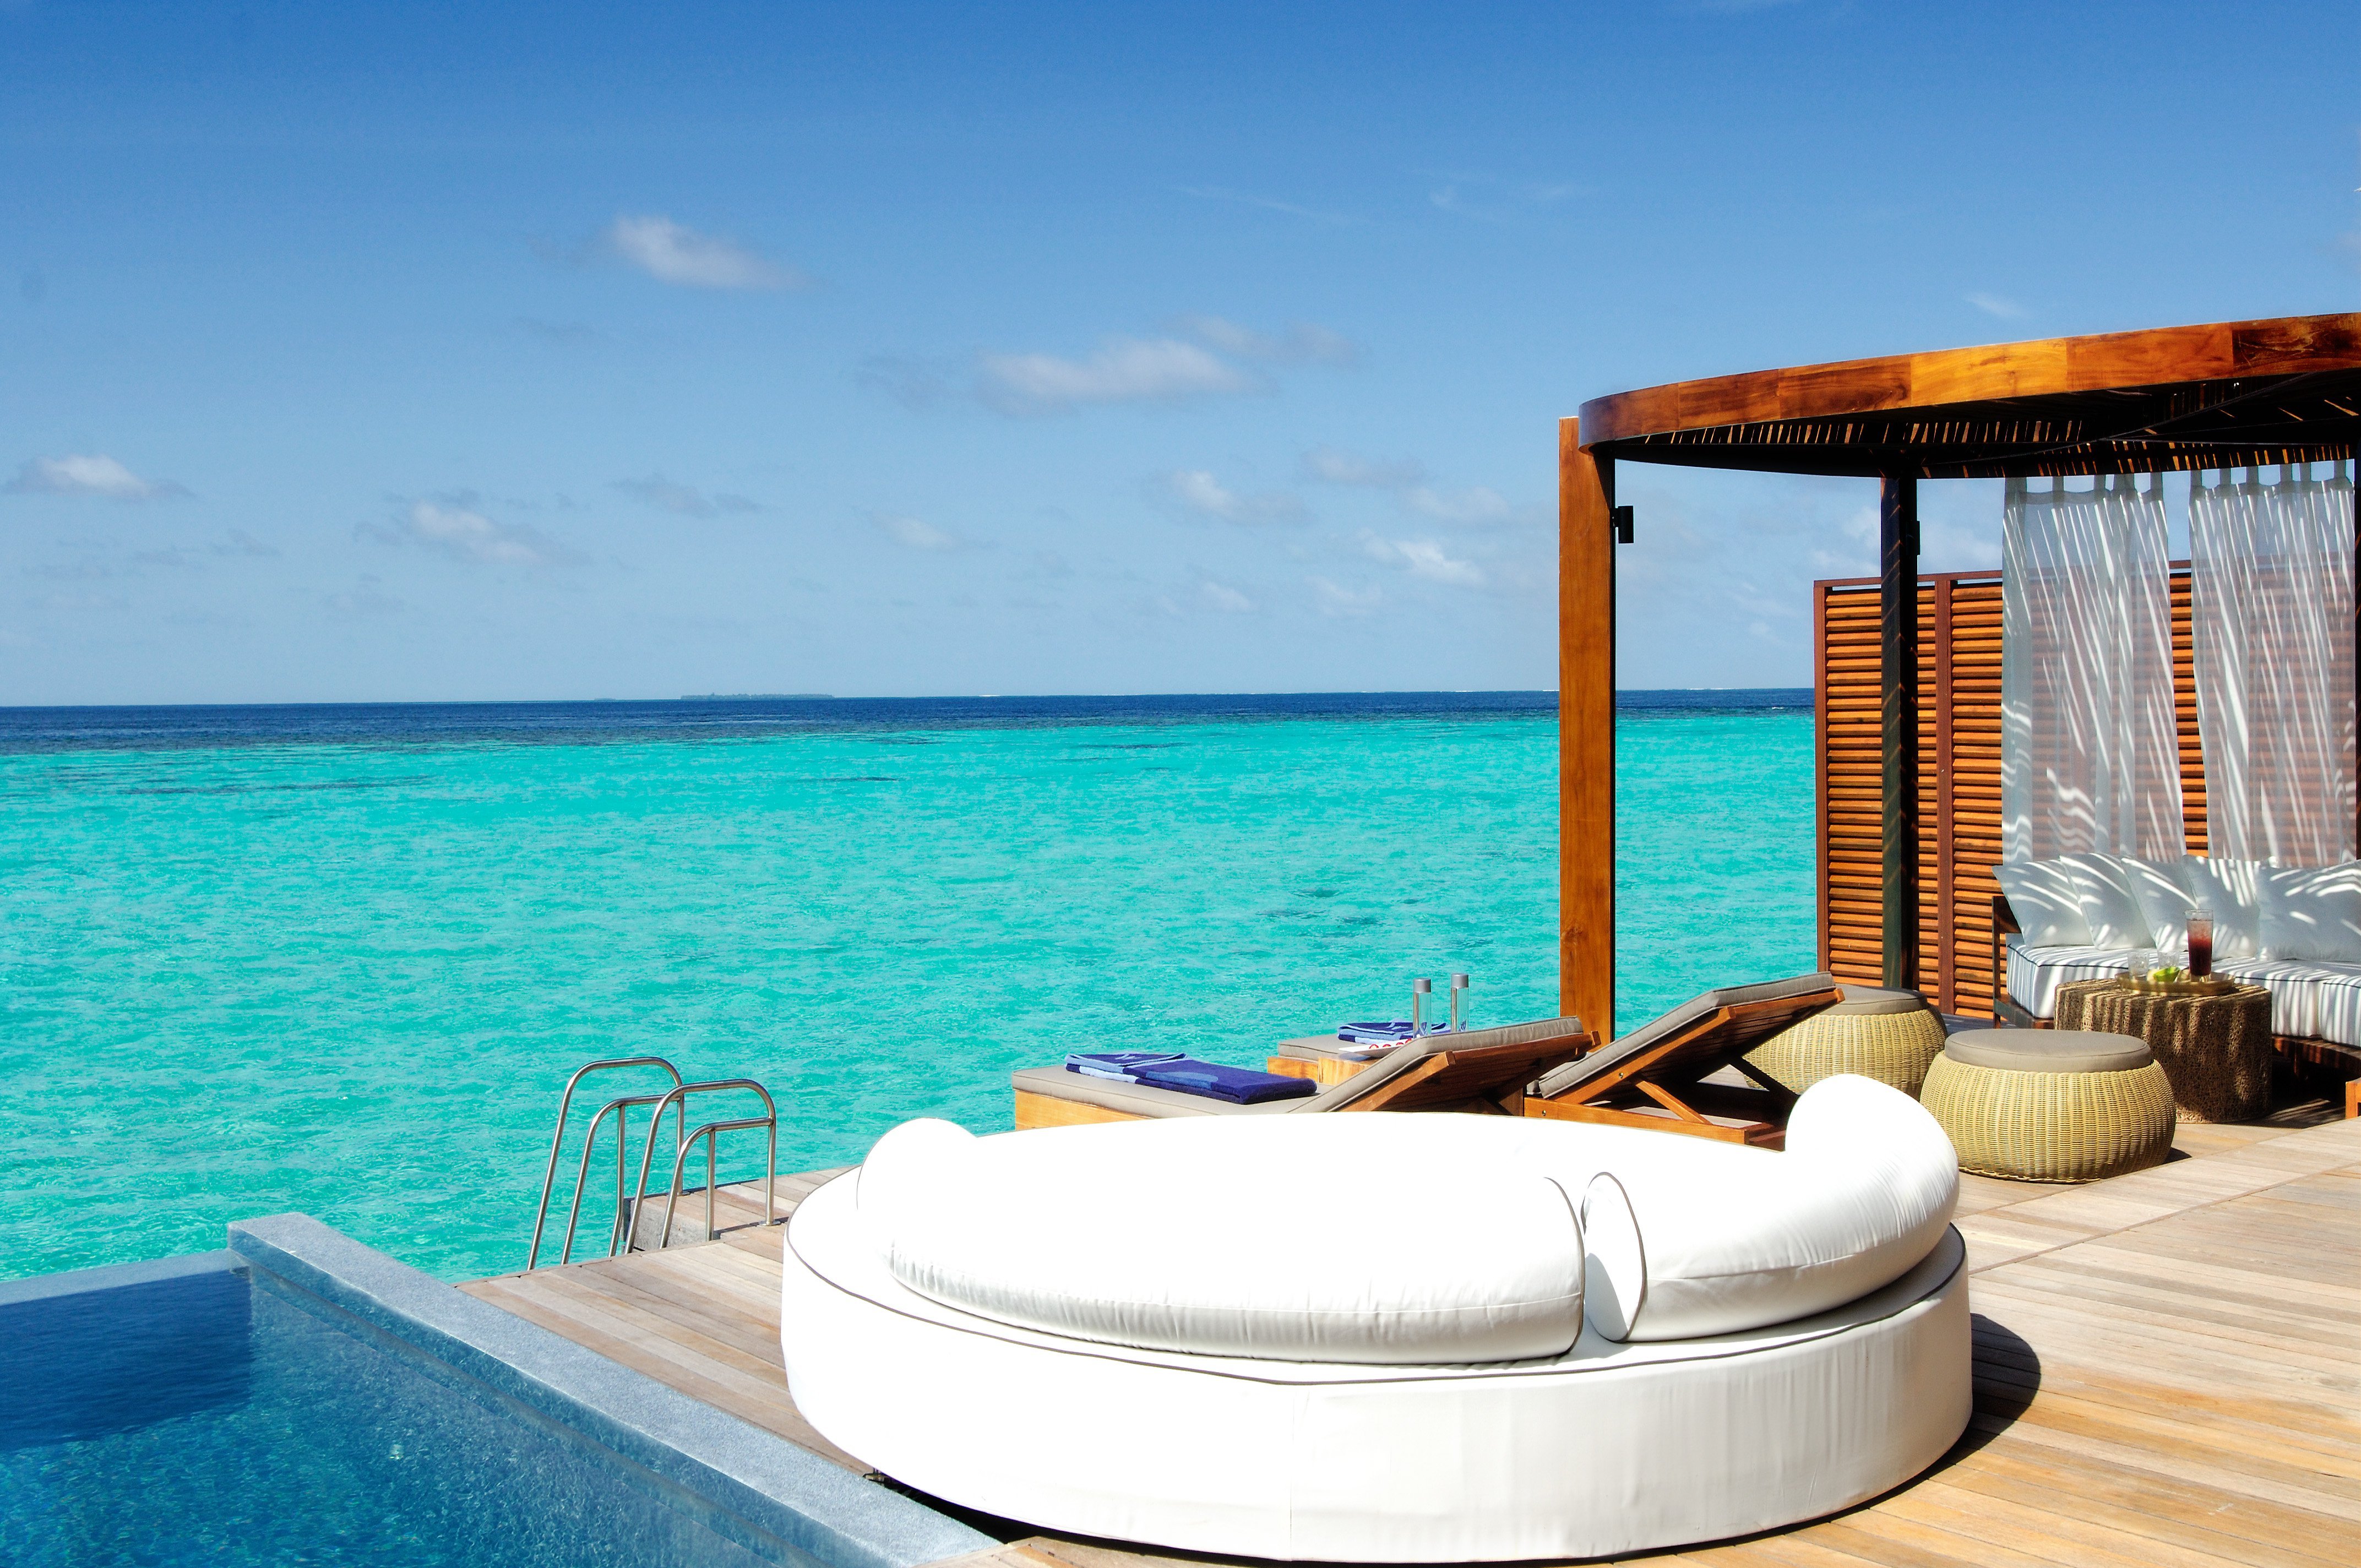 Отели рядом с морем. Отель w Retreat & Spa. Мальдивы Резорт лакшери. W Retreat & Spa 5* Deluxe. W Retreat & Spa Maldives 5*Lux.